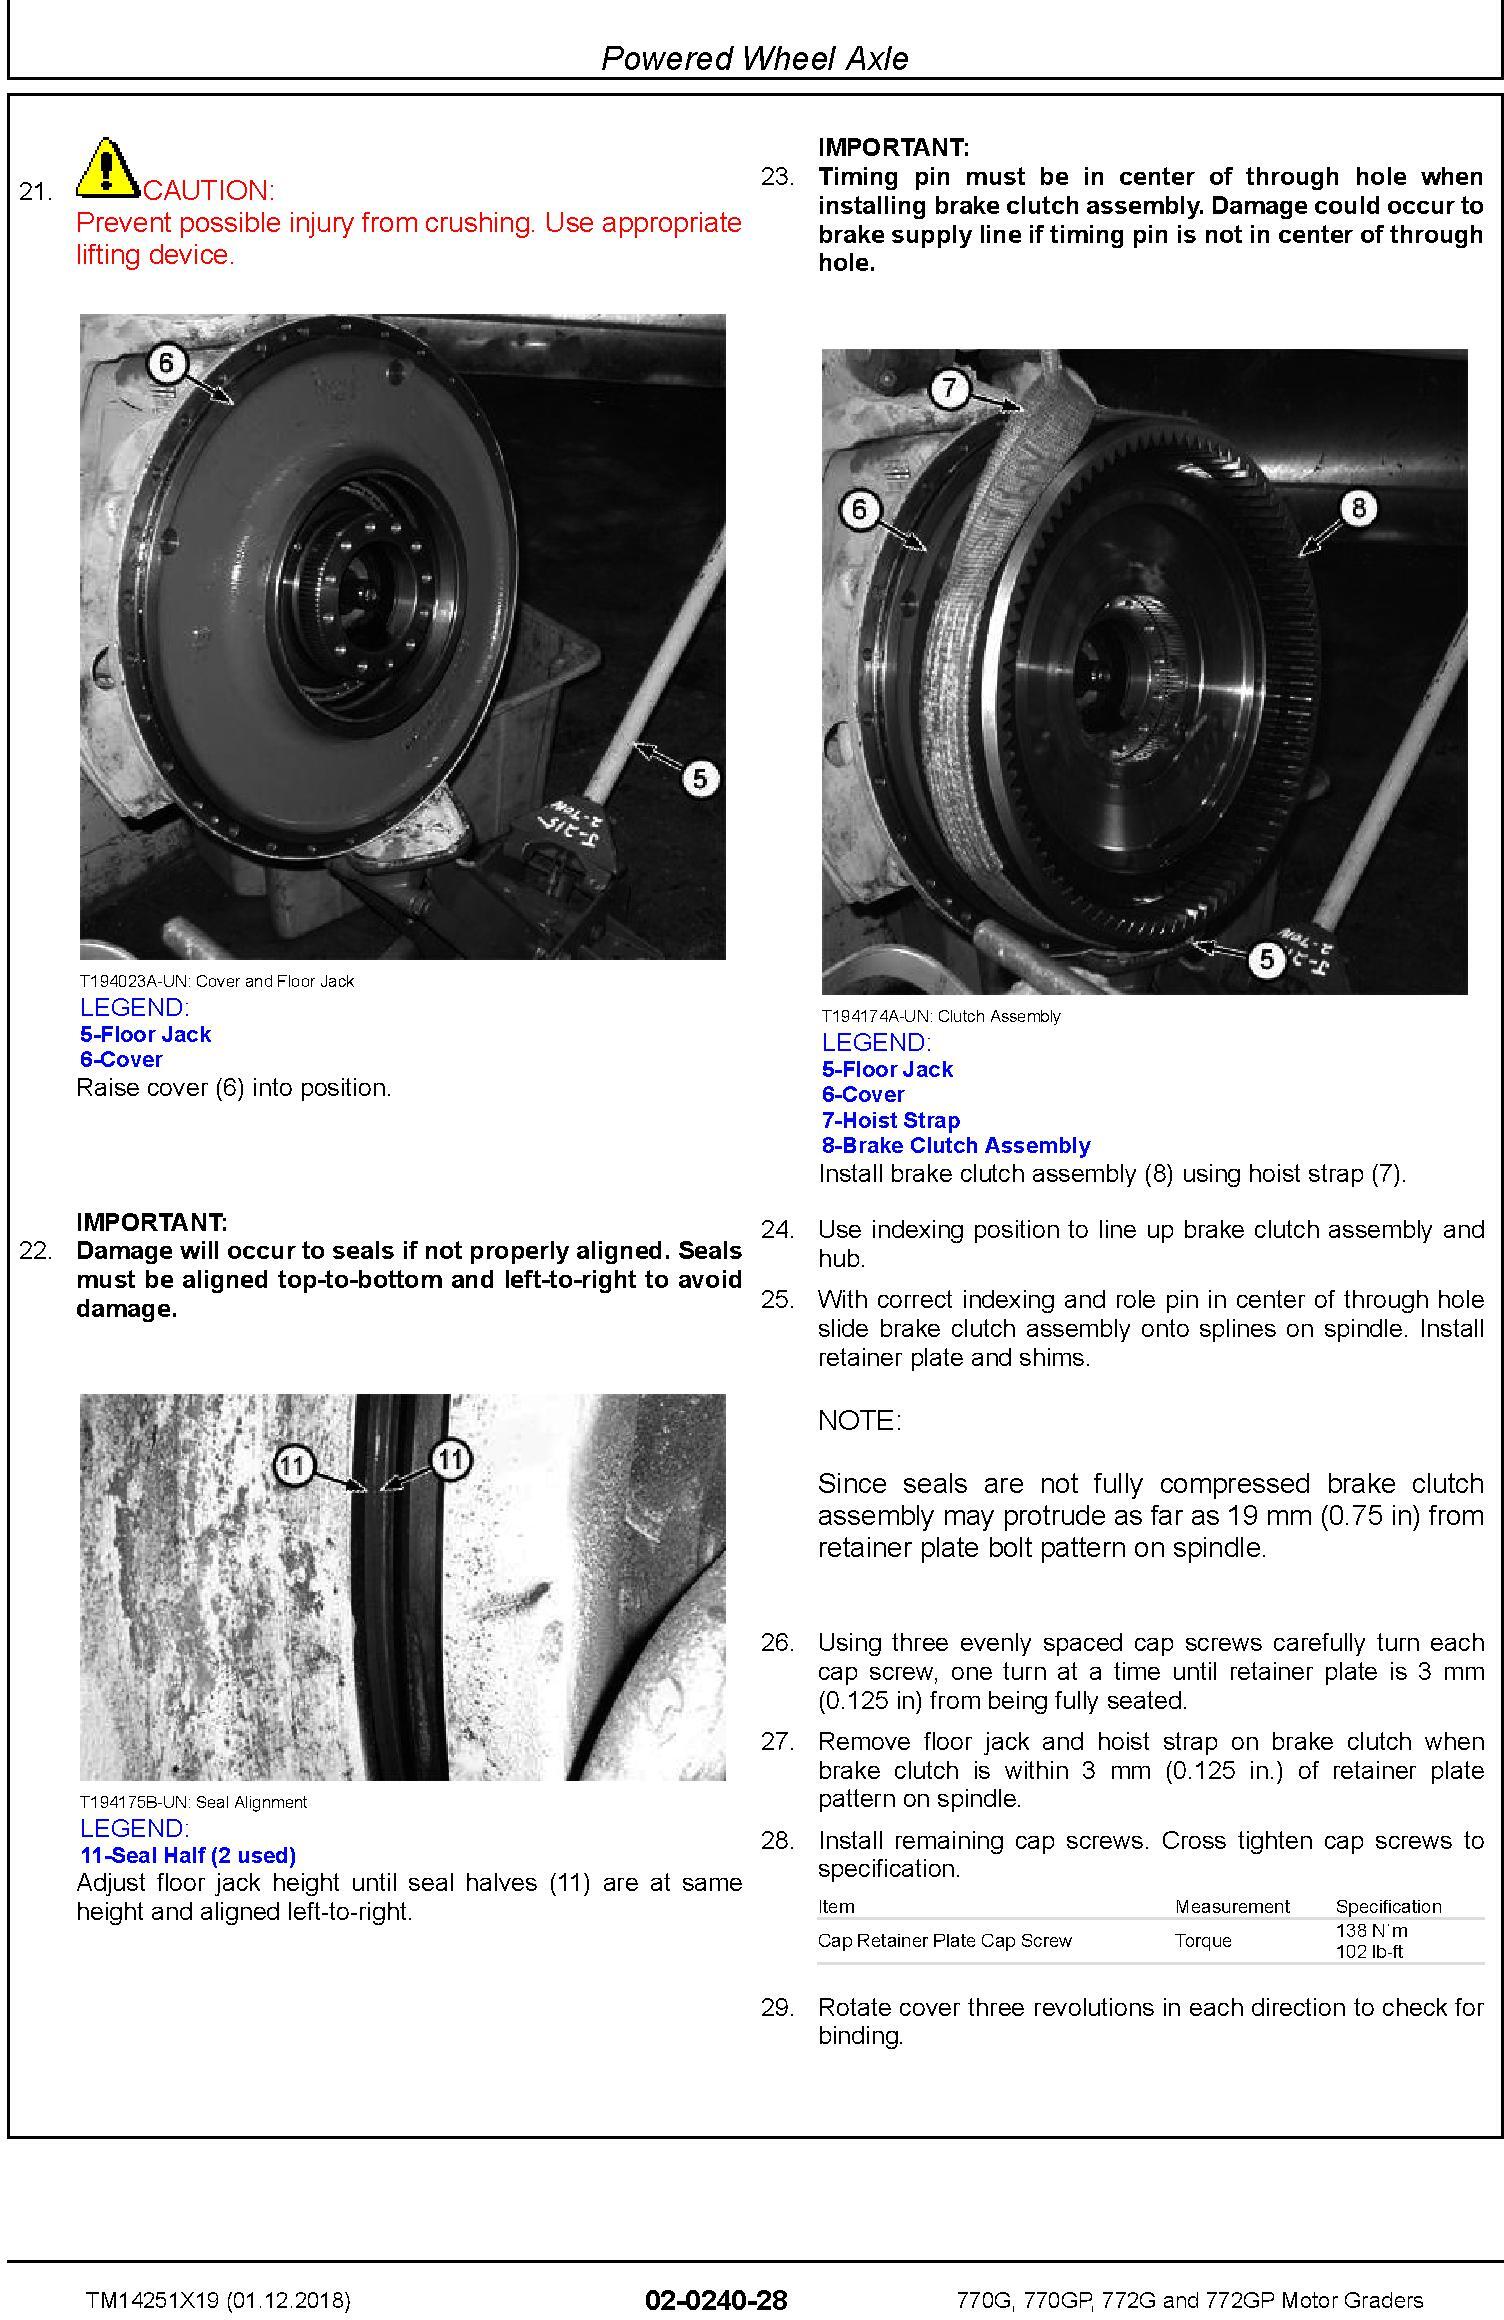 John Deere 770G, 770GP, 772G, 772GP (SN. C680878-,D680878-) Motor Graders Repair Manual (TM14251X19) - 3